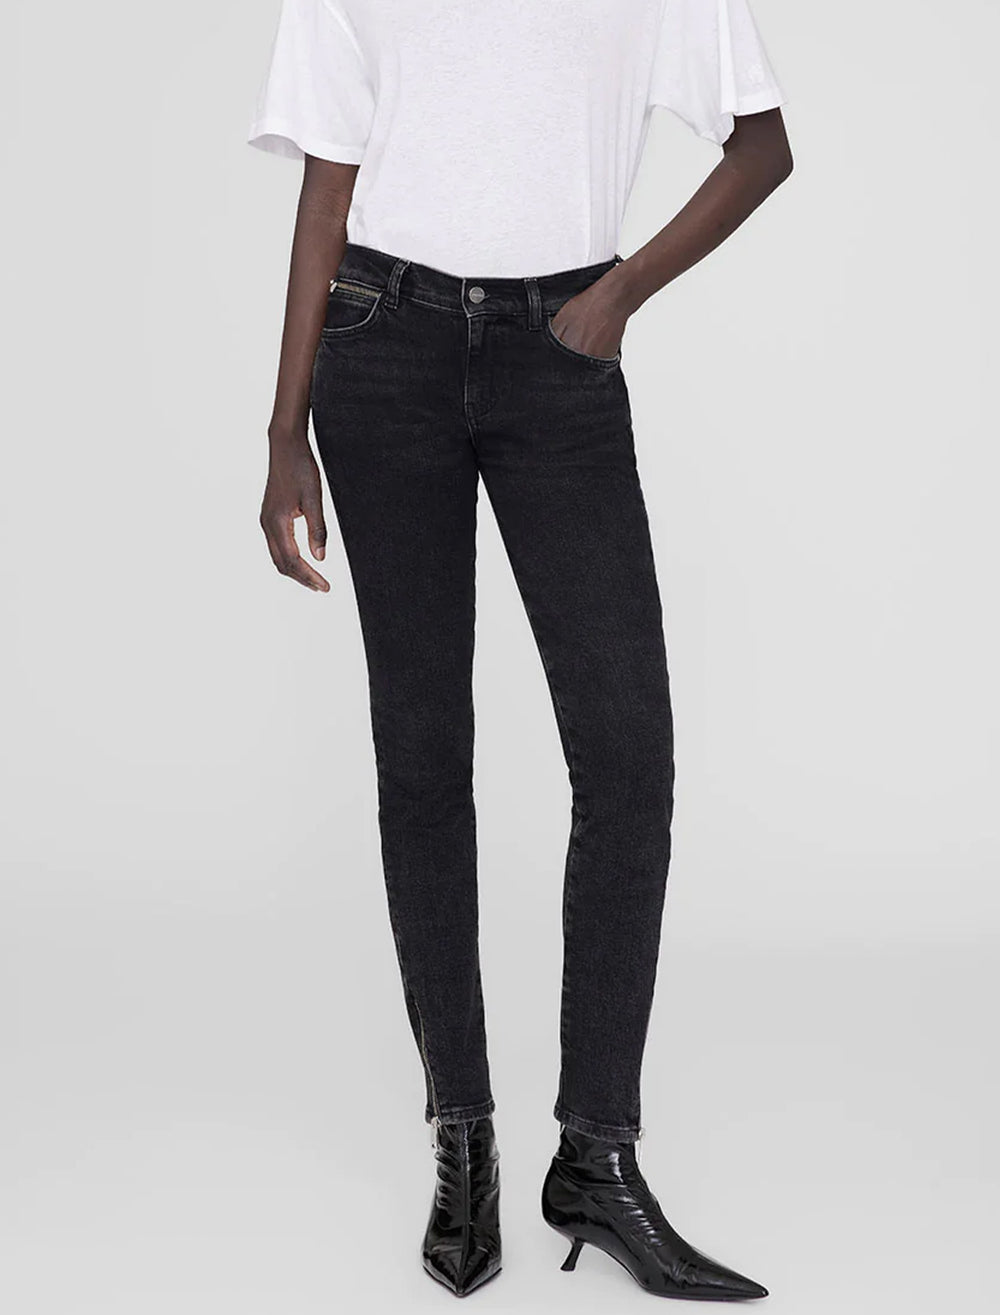 Model wearing Anine Bing's jax jean in smoke black.